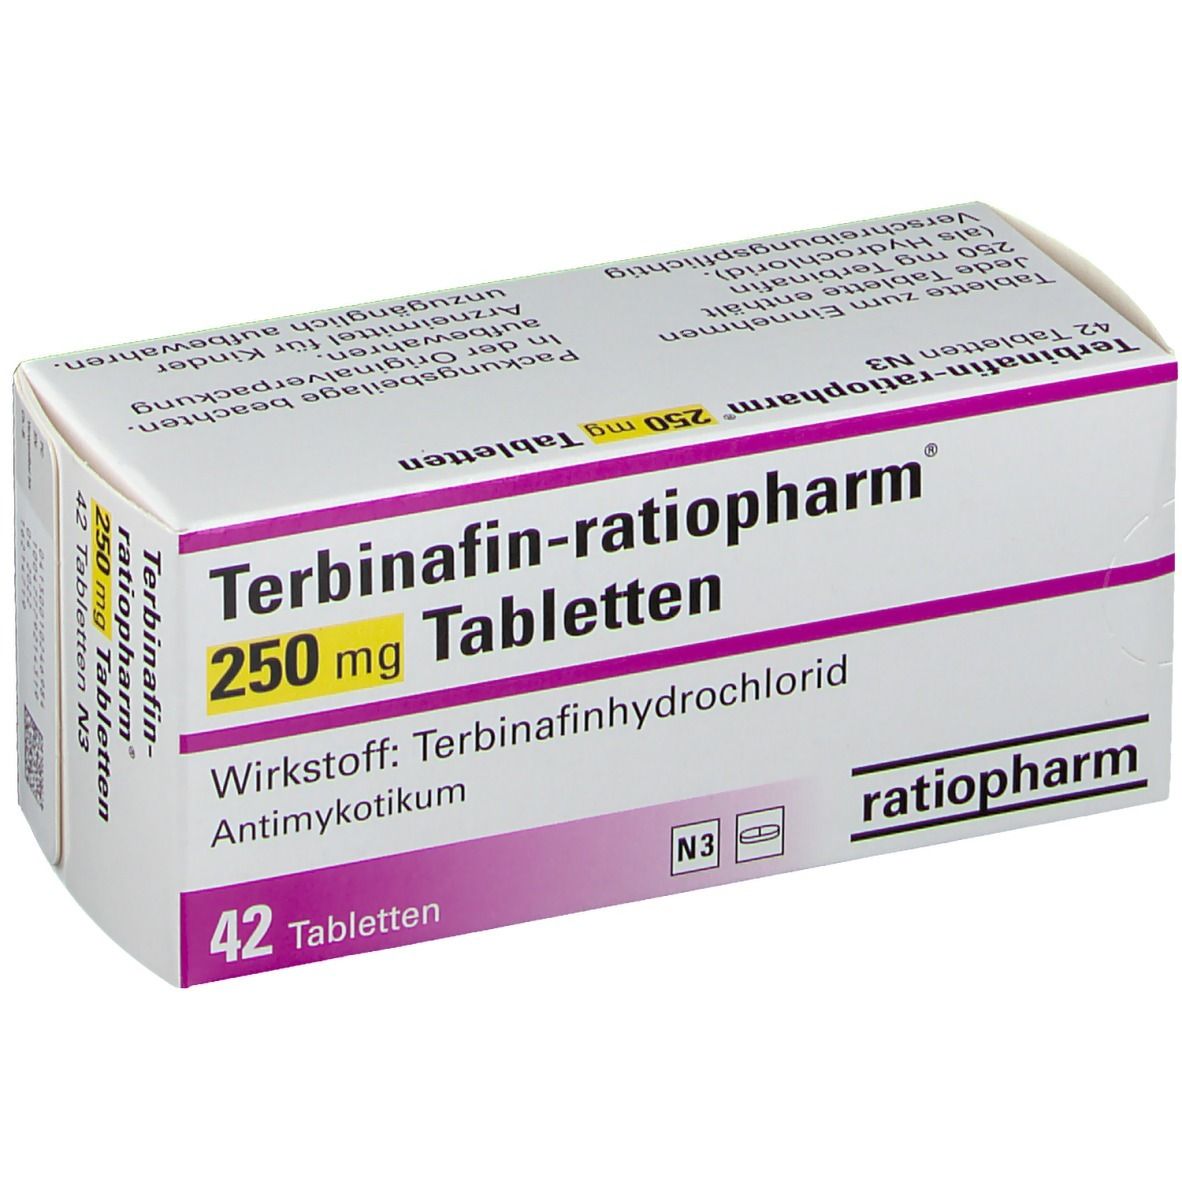 Terbinafin-ratiopharm® 250 mg